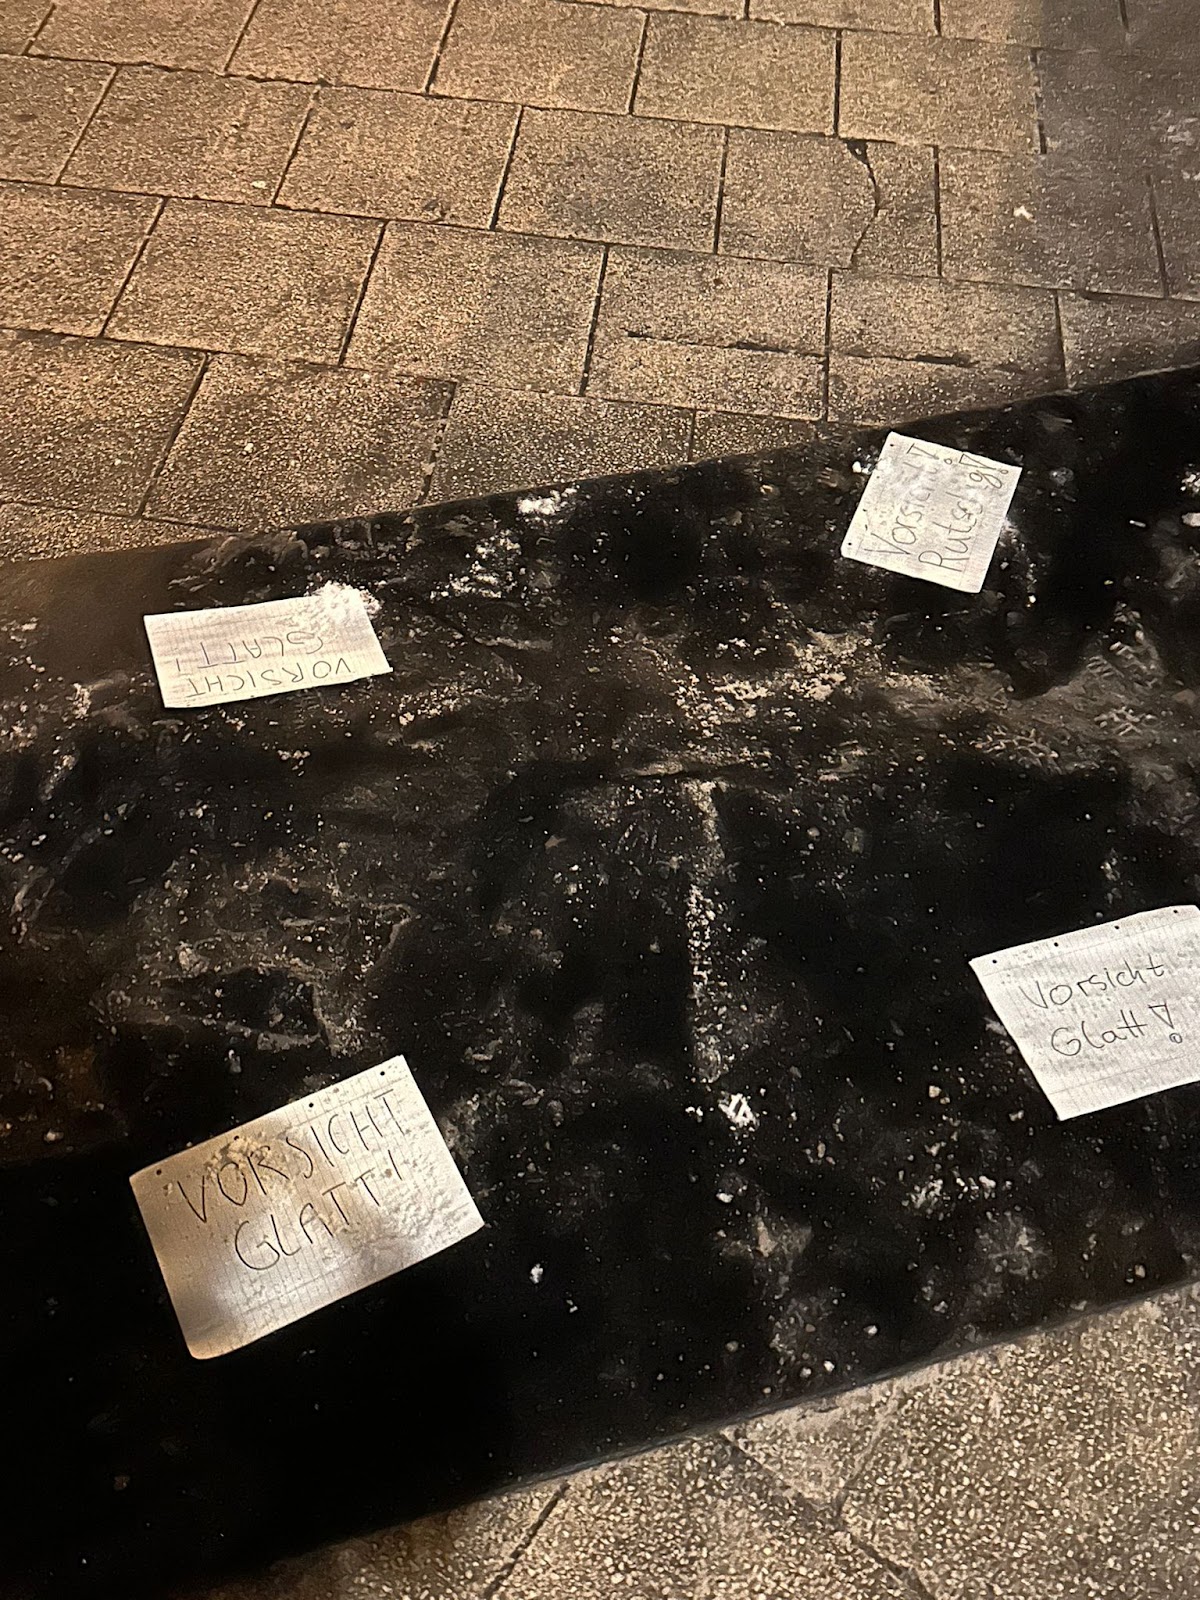 Schilder mit der Aufschrift "Vorsicht Glatt" auf einer rutschigen Matte auf dem Boden in Köln